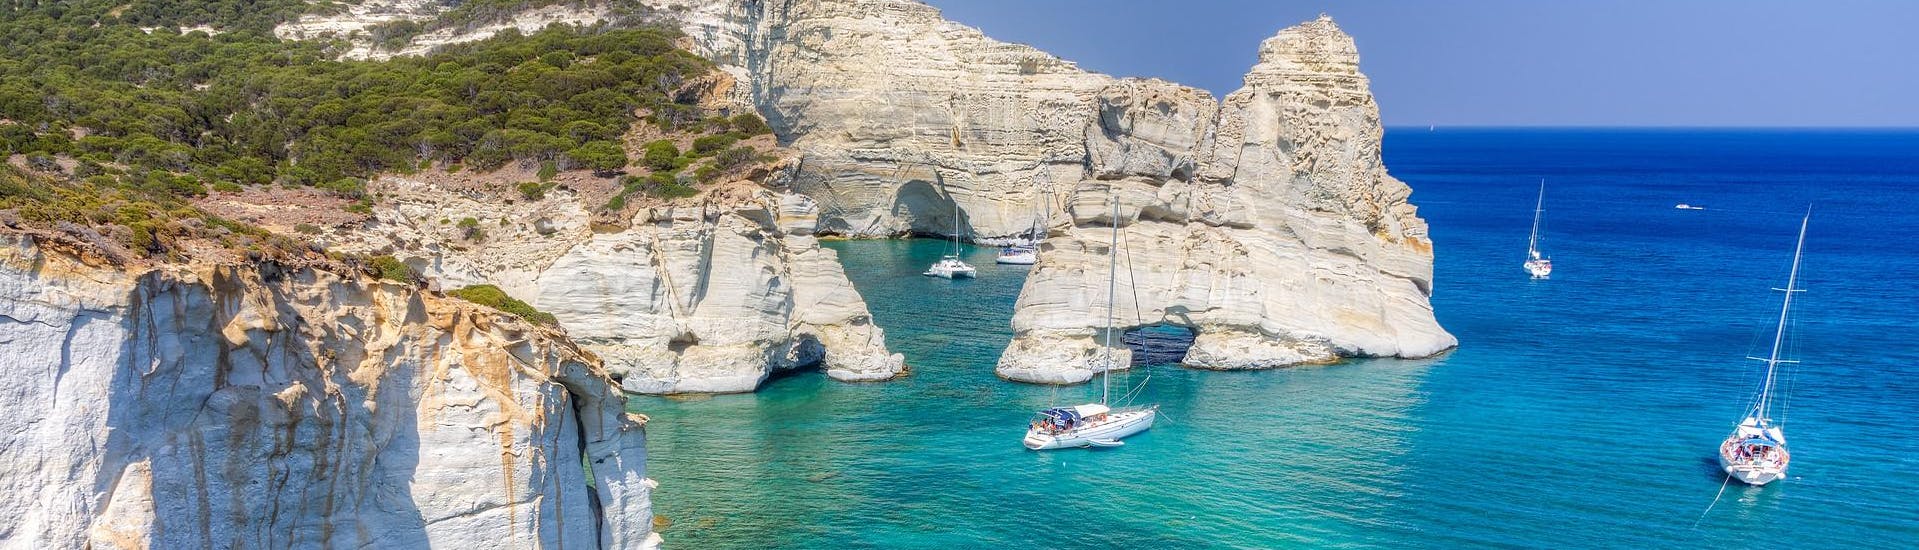 Les magnifiques formations rocheuses de Kleftiko, que vous pouvez admirer lors d'une excursion en bateau à Milos.